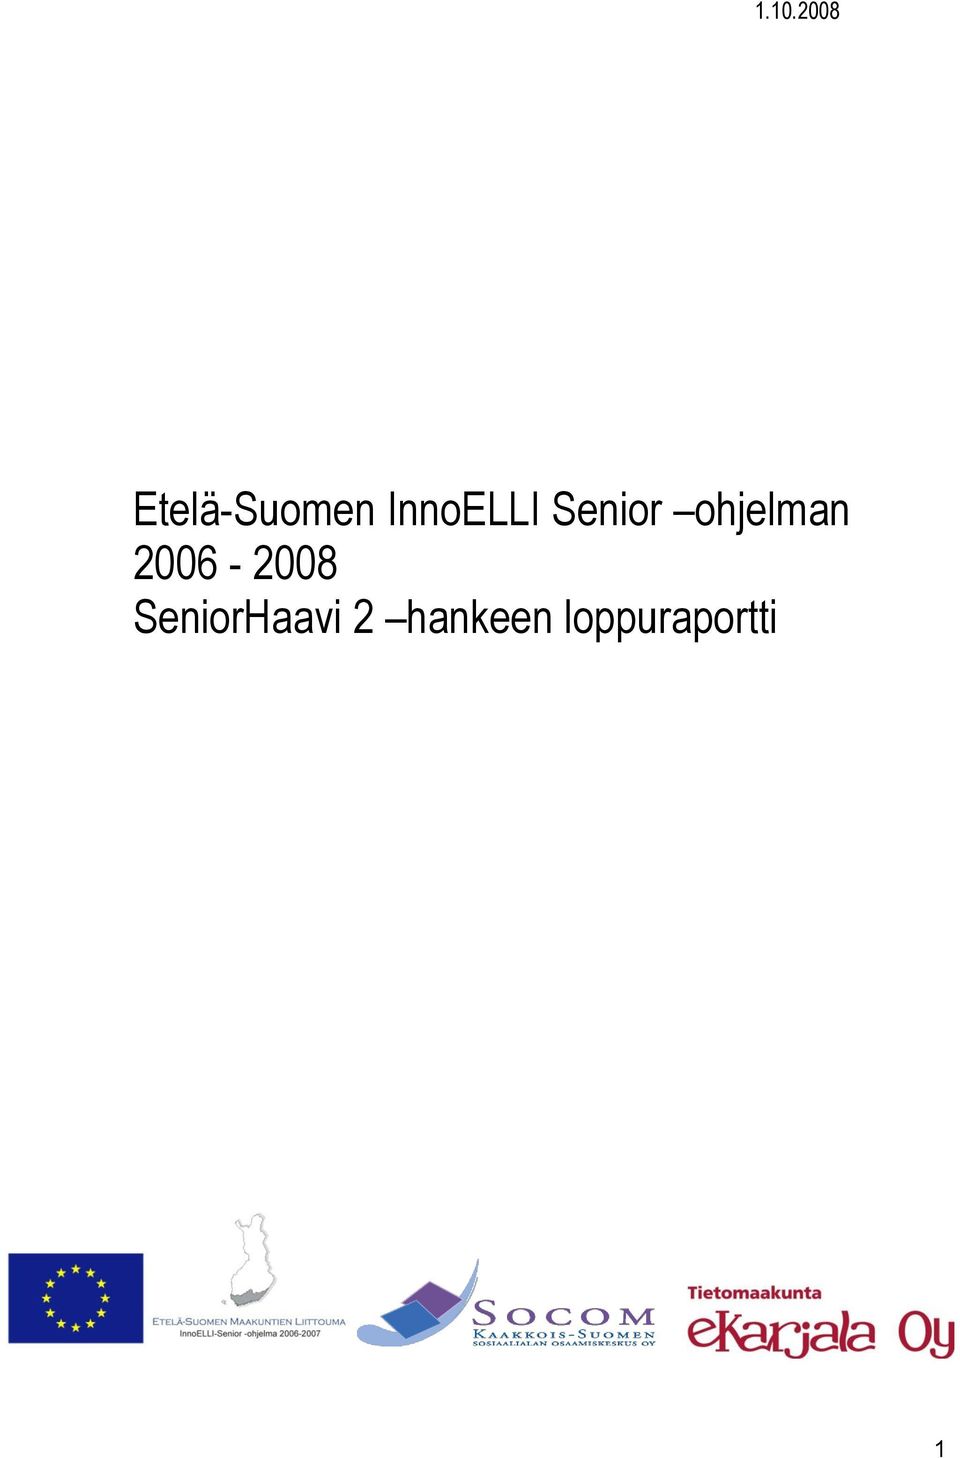 ohjelman 2006-2008